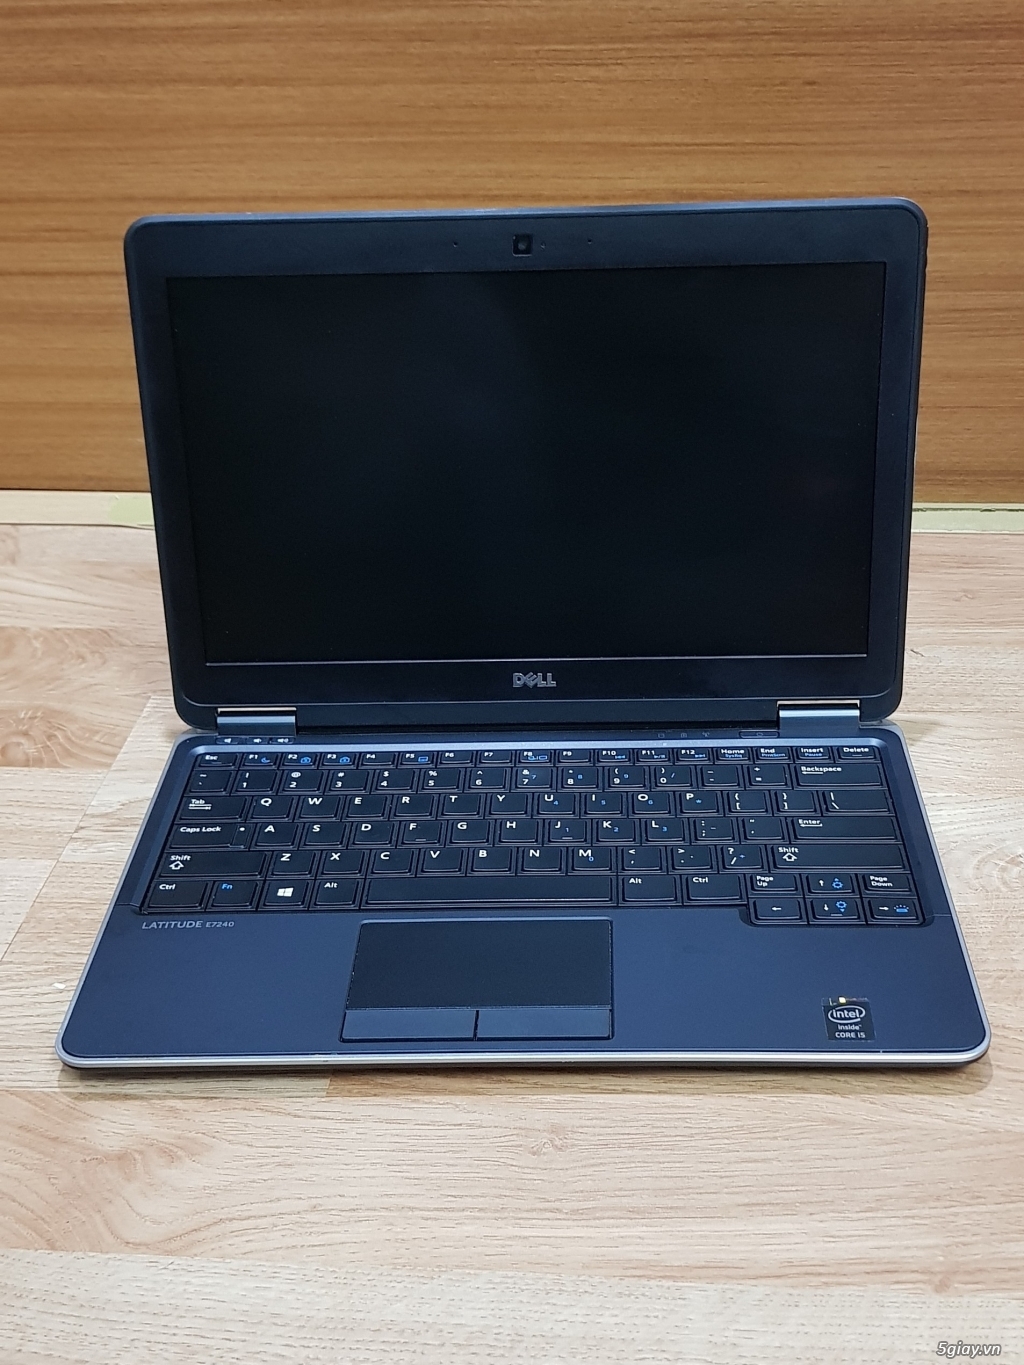 Laptop Dell Xách Tay, Zin Đẹp Ram 4g, Ổ SSD 128GB Giá < 5M, Bh 1 đổi 1 - 22